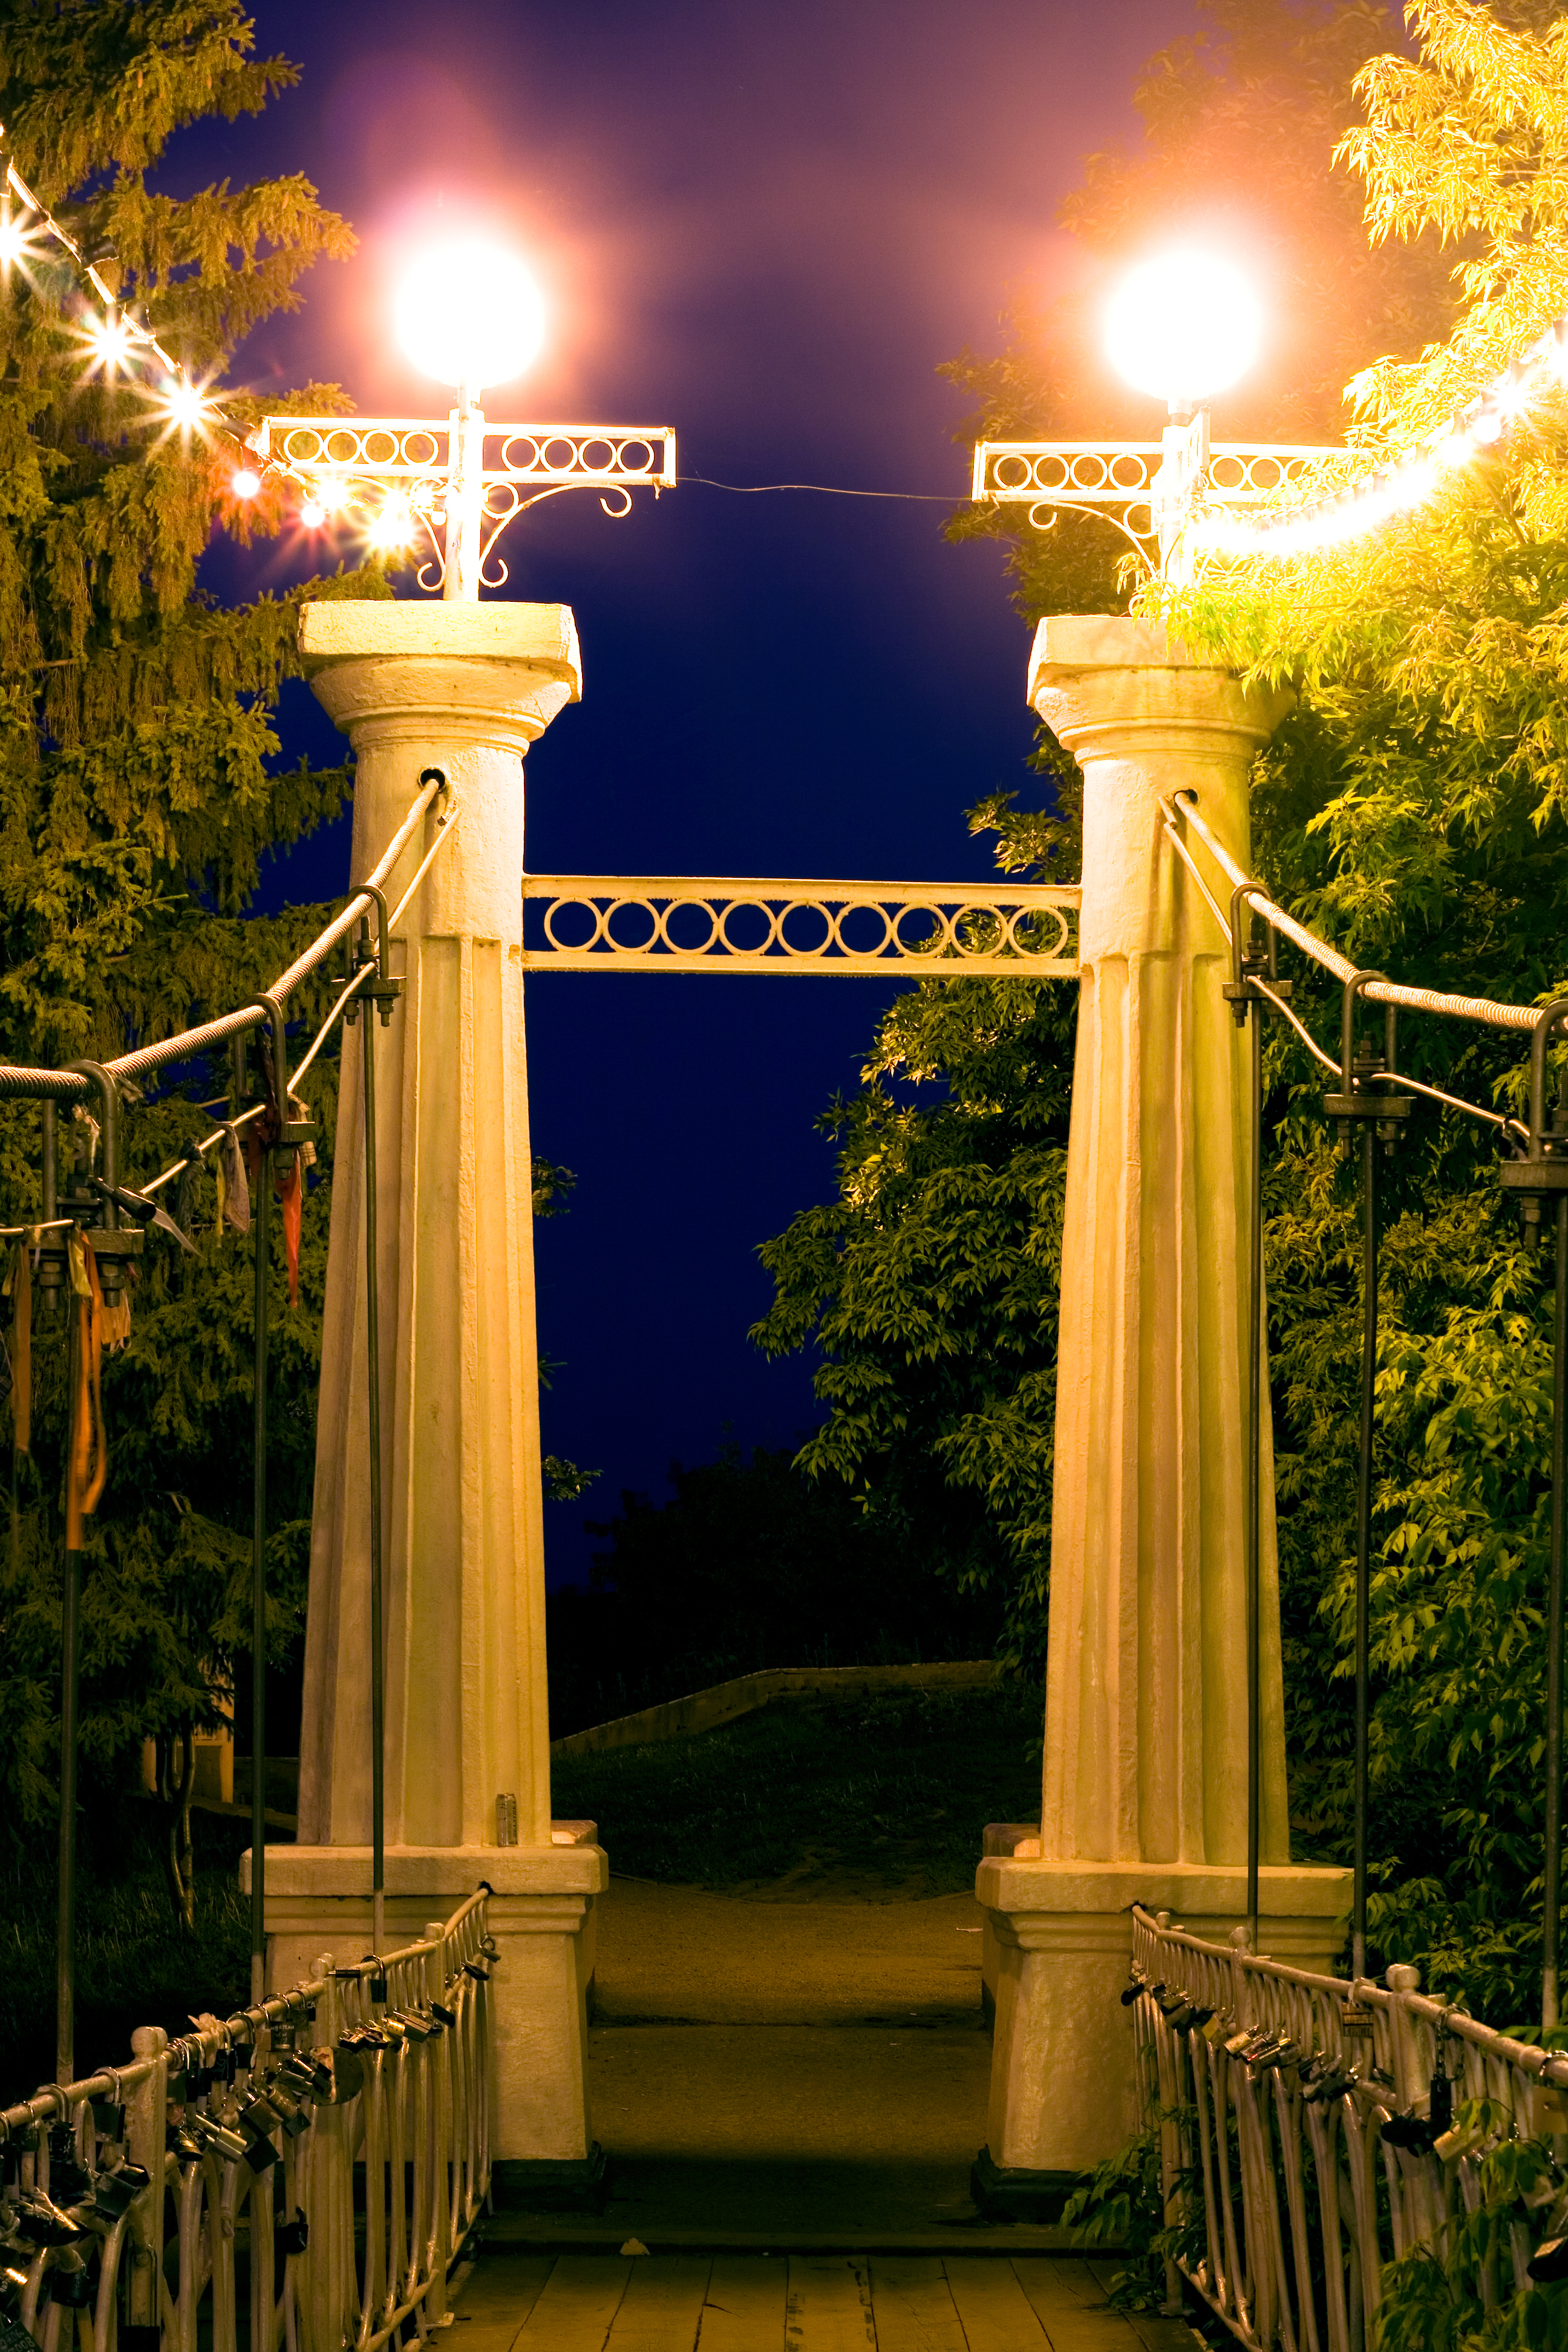 Park scene. Иллюминация на Столбах. Ретро столбы. Динамические столбы в парке. Уличный мост.